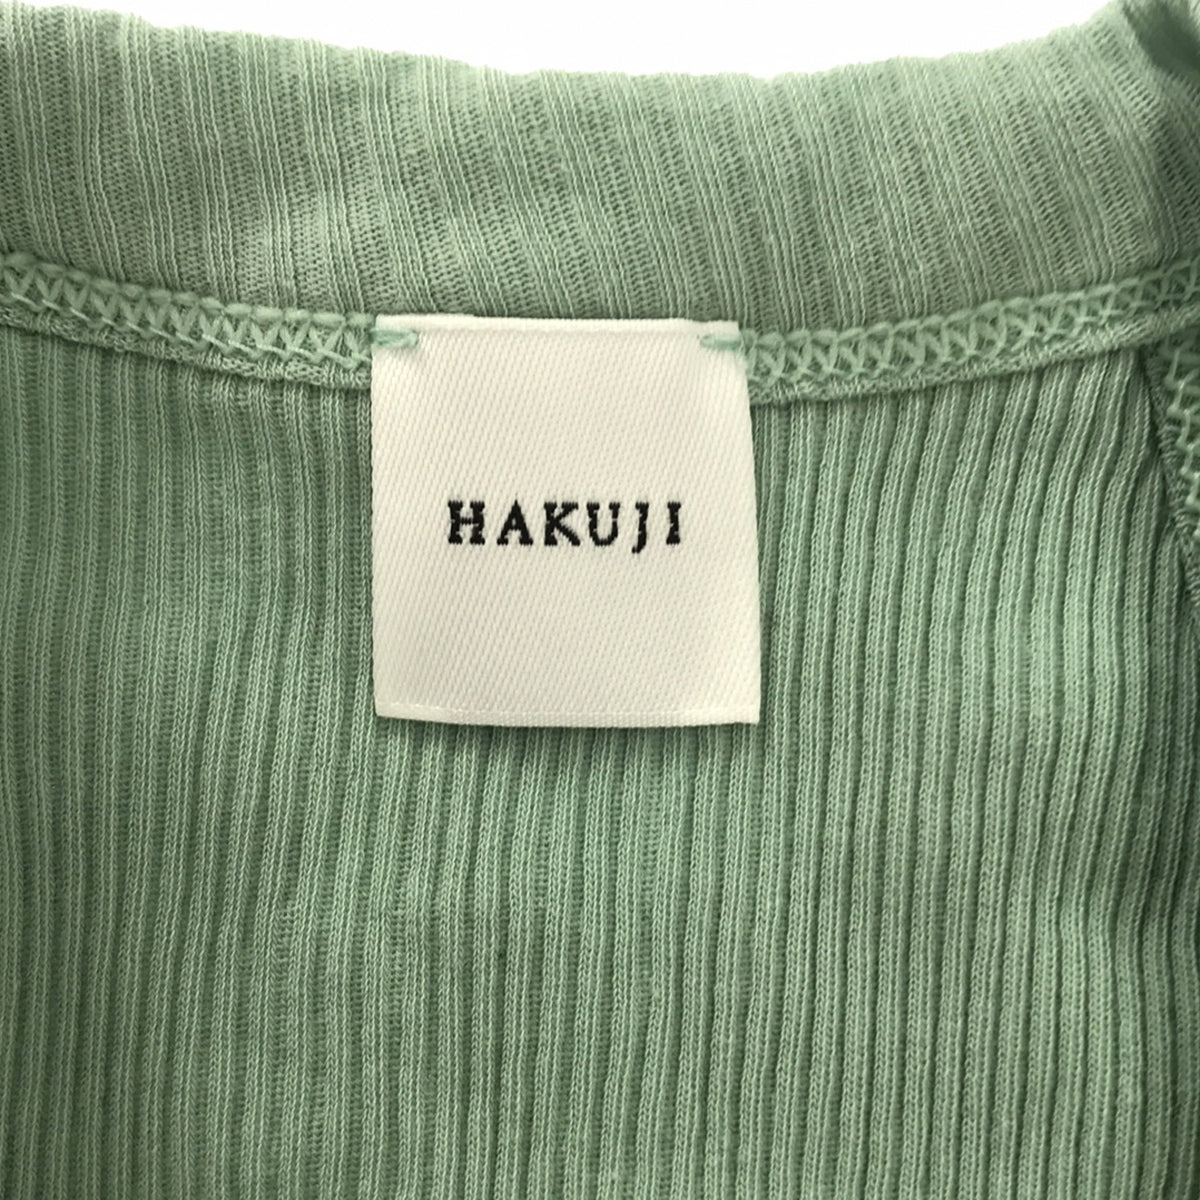 HAKUJI / ハクジ | Cotton Bra Tank カップ付き コットン ブラ タンクトップ | F | レディース